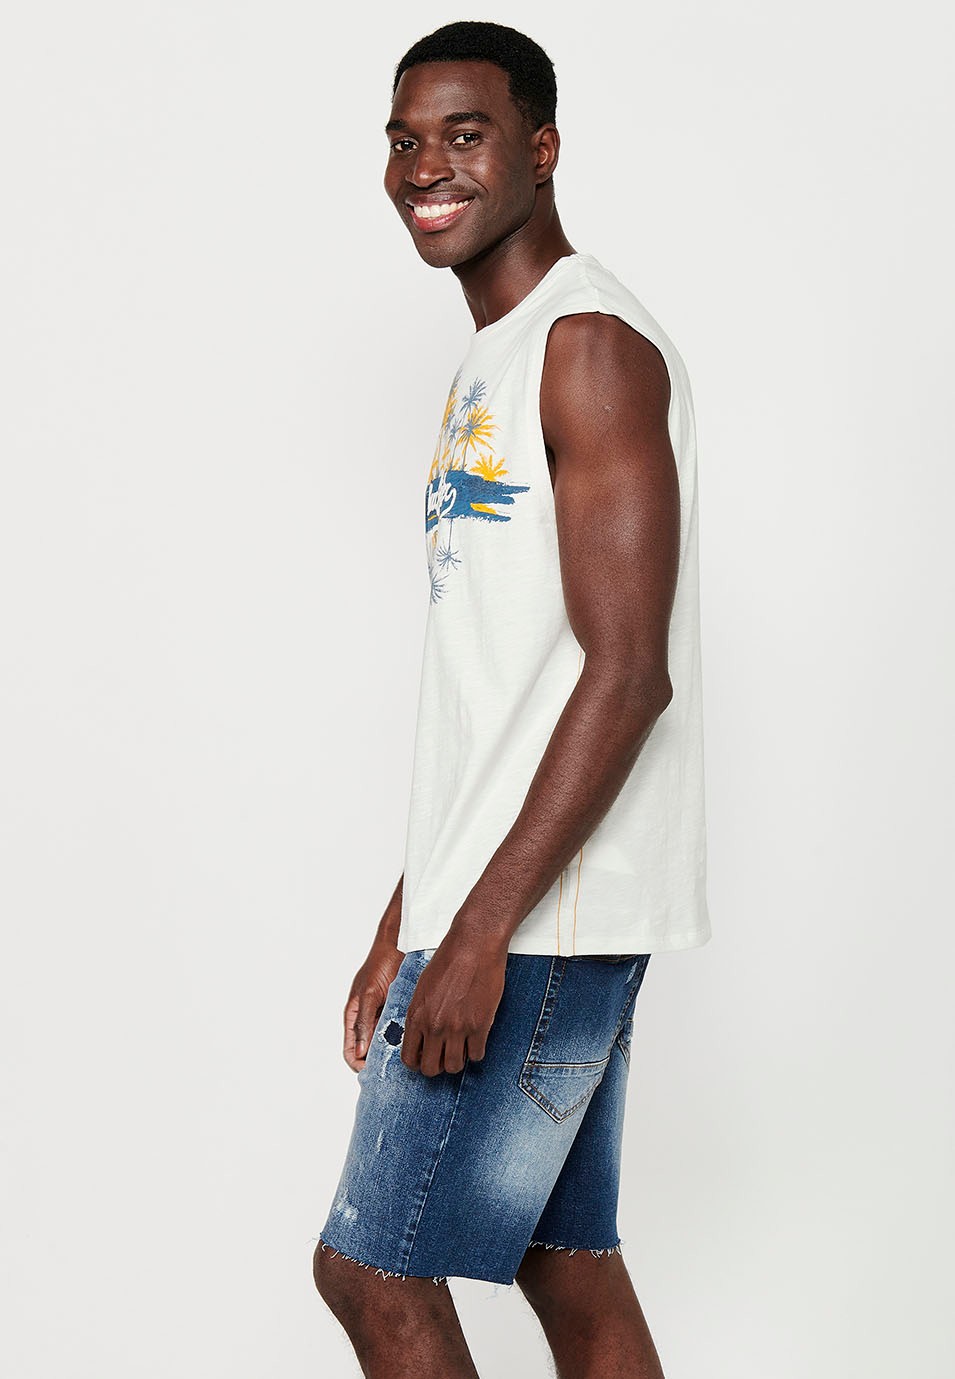 Camiseta sin mangas con estampado delantero, color blanco para hombres